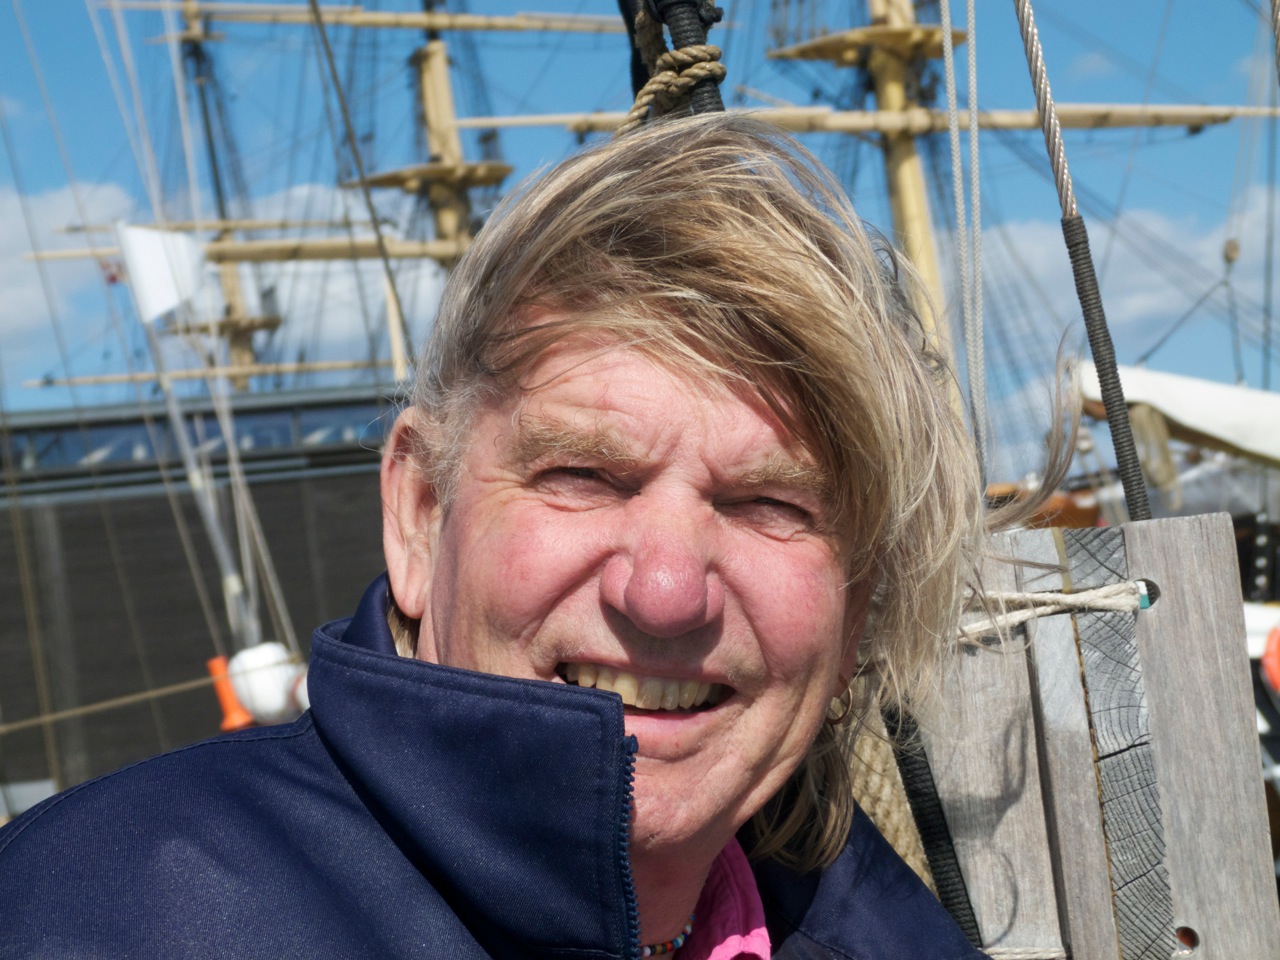 Troels Kløvedal om bord på "Nordkaperen". I næste uge sejler den kendte skib ind i Det sydfynske Øhav for at producere tv fra Danmarks Museum for Lystsejlads i Troense. Foto: Søren Stidsholt Nielsen.